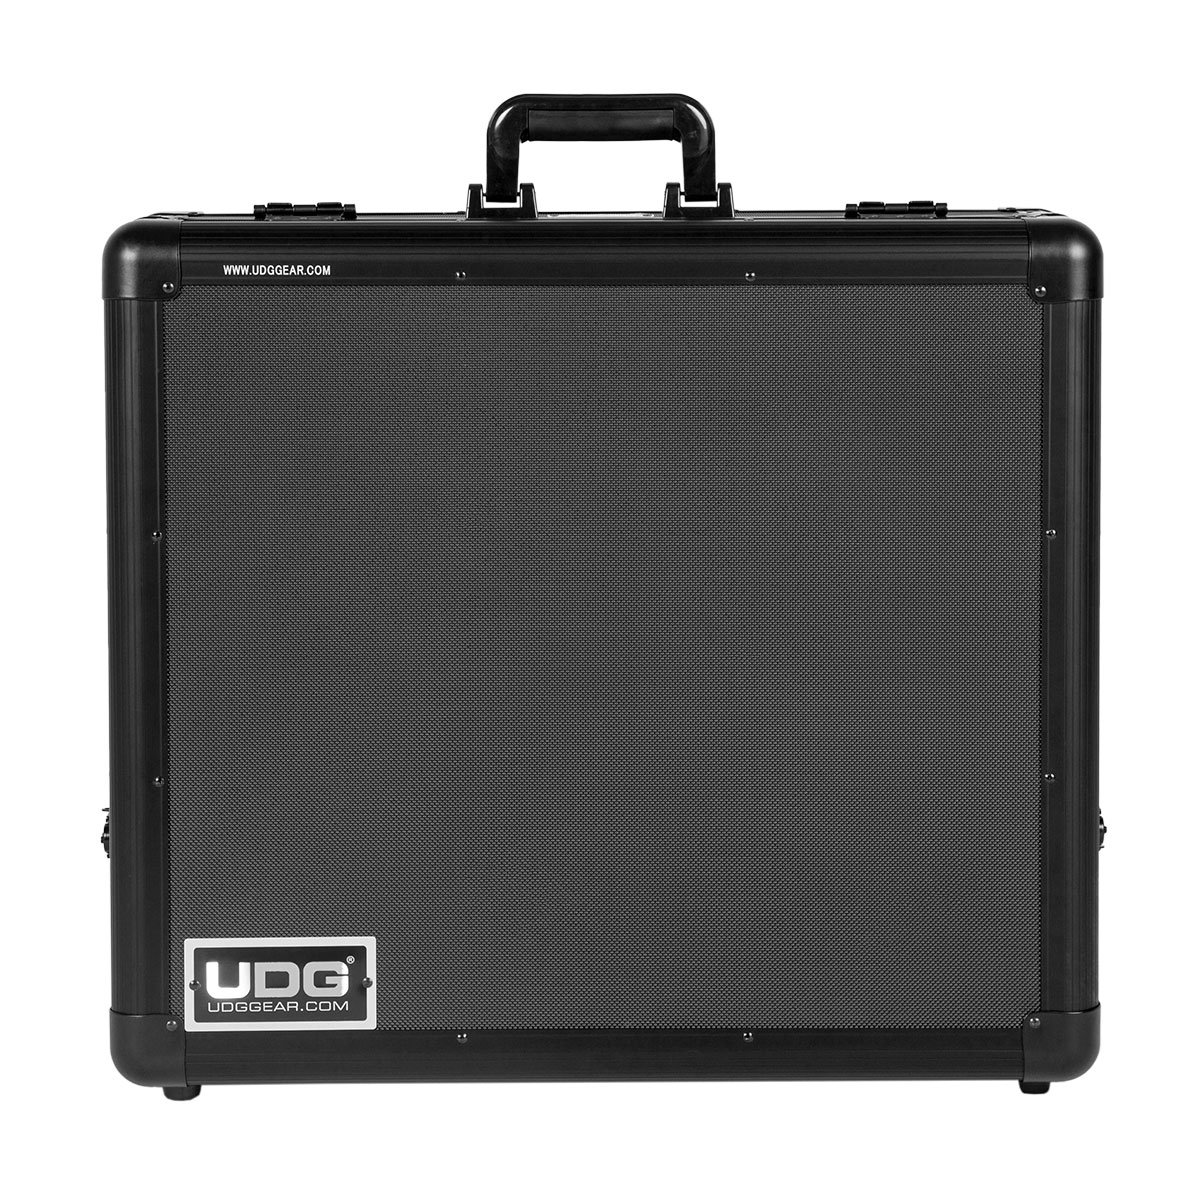 UDG | Ultimate Pick Foam フライトケース各種 | シンセサイザー